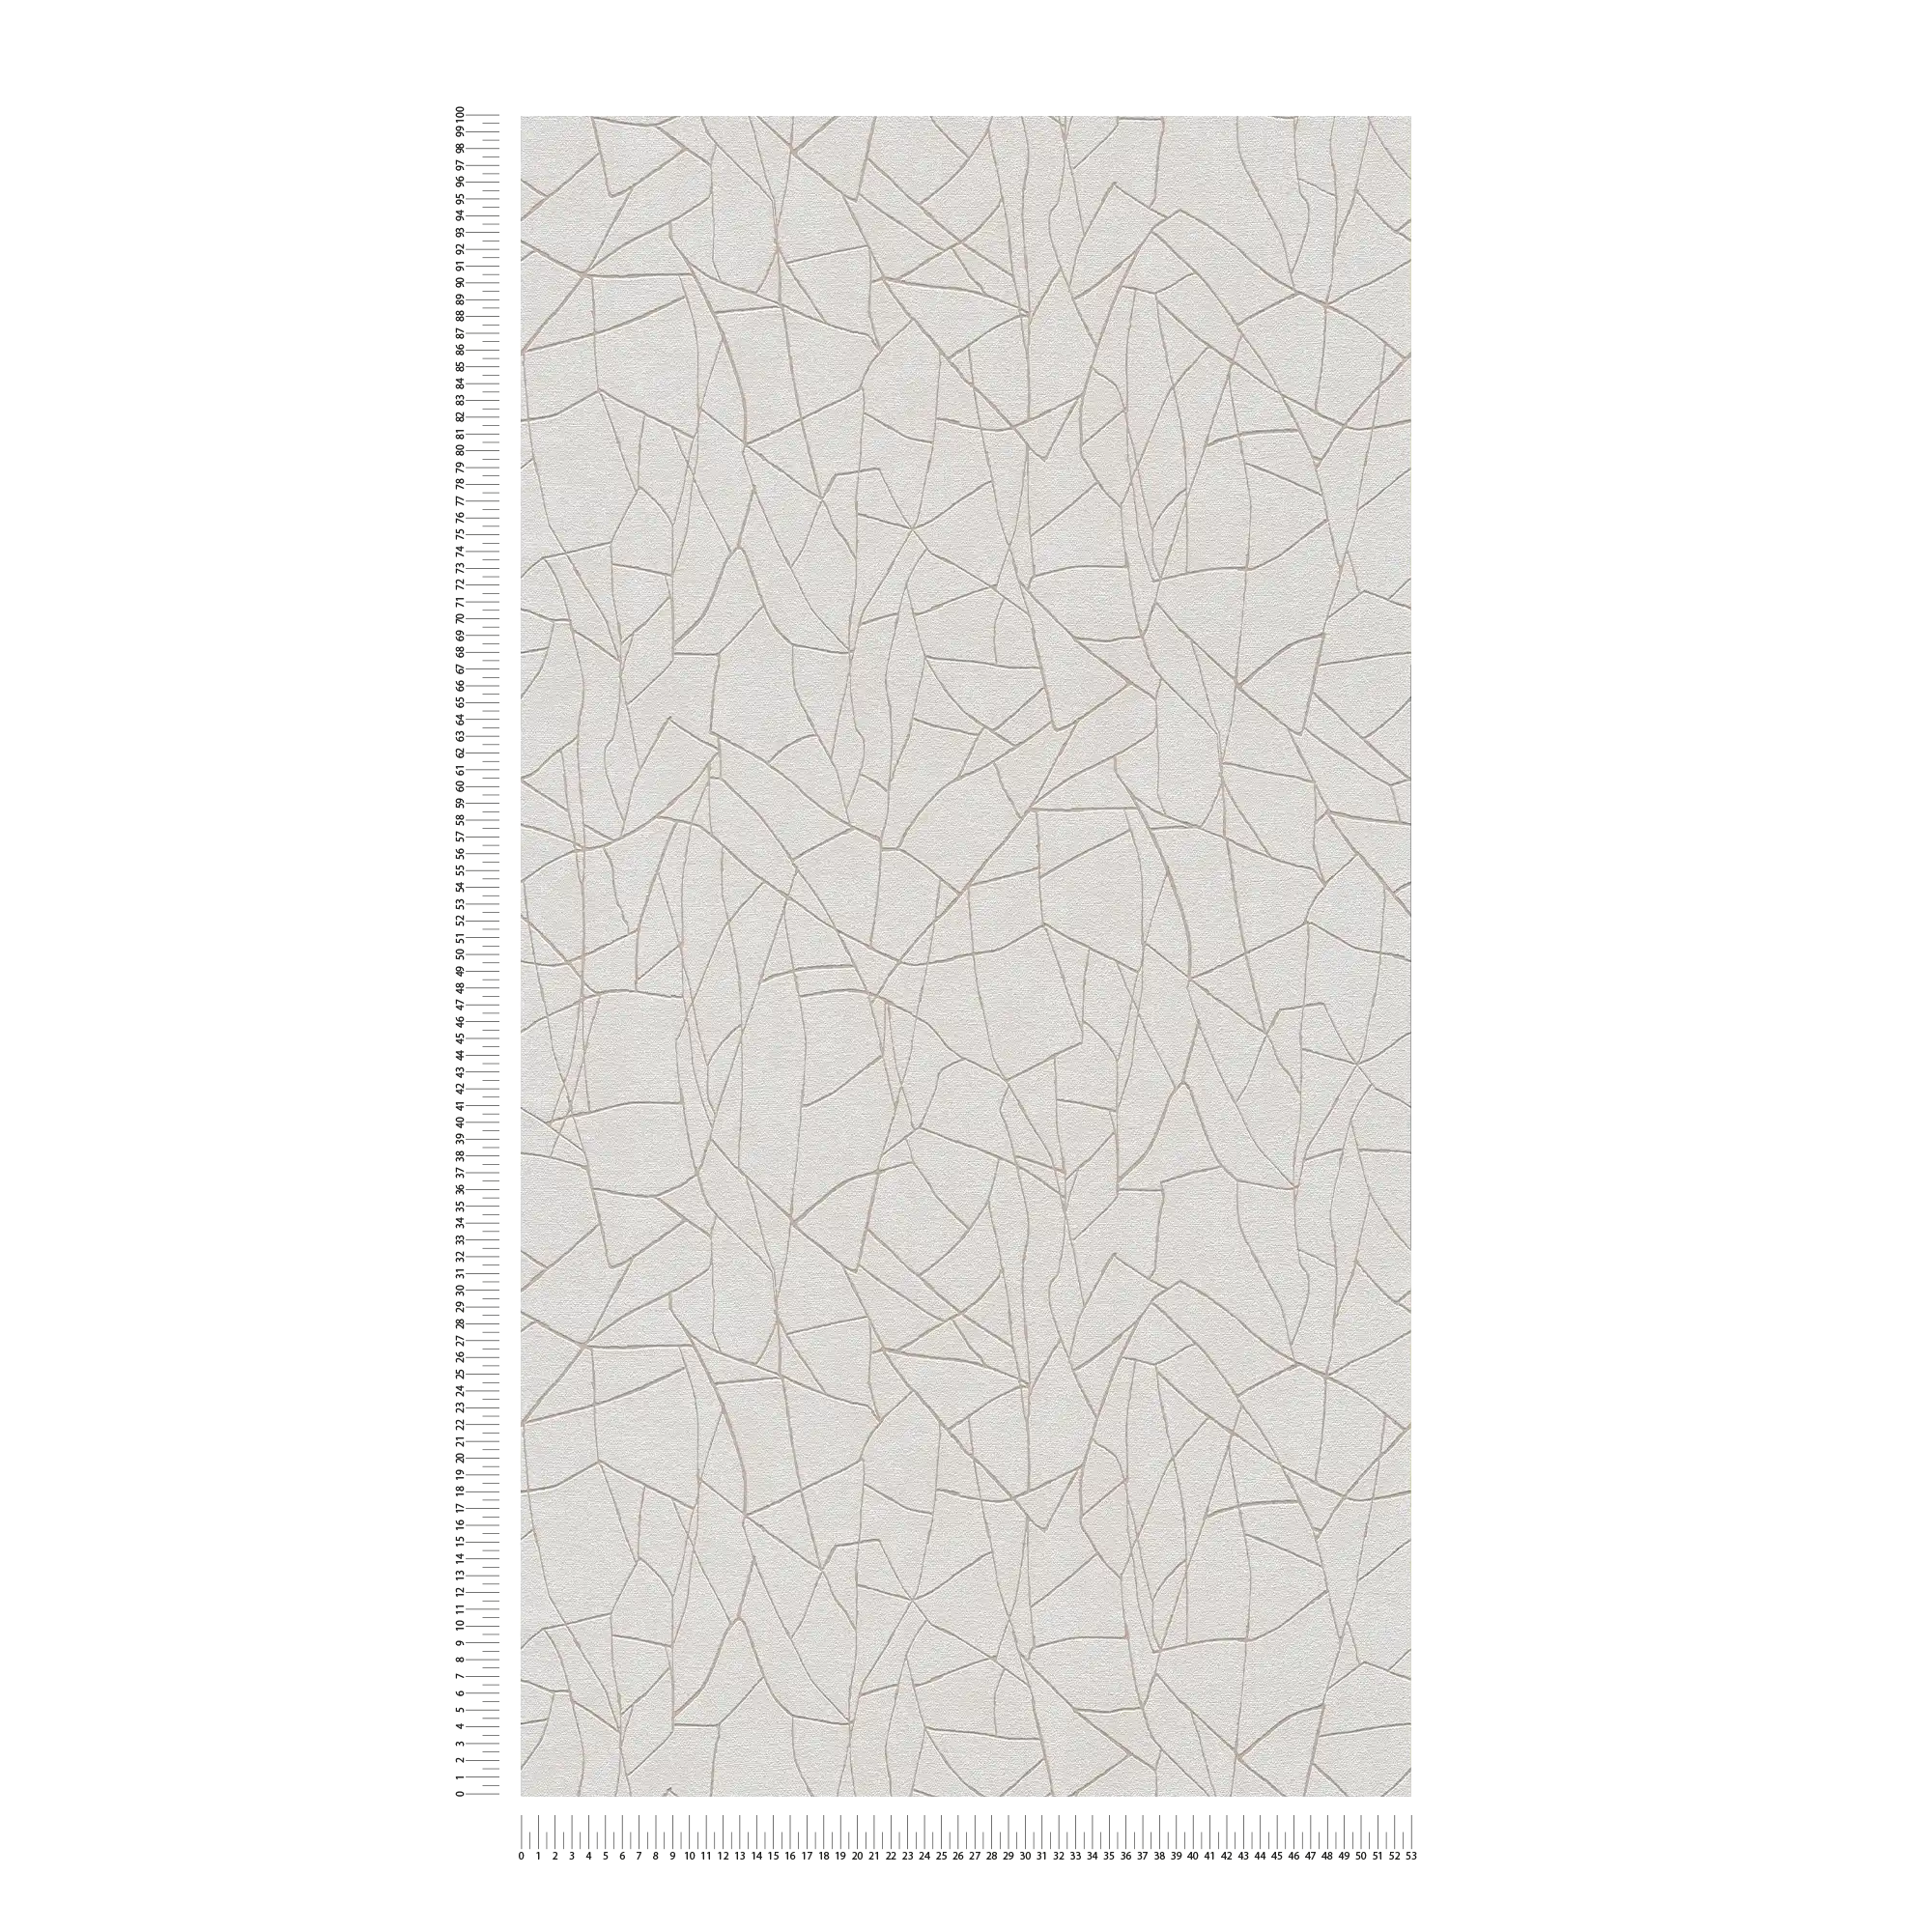             Papel pintado no tejido con motivo gráfico naturaleza 3D - gris, blanco
        